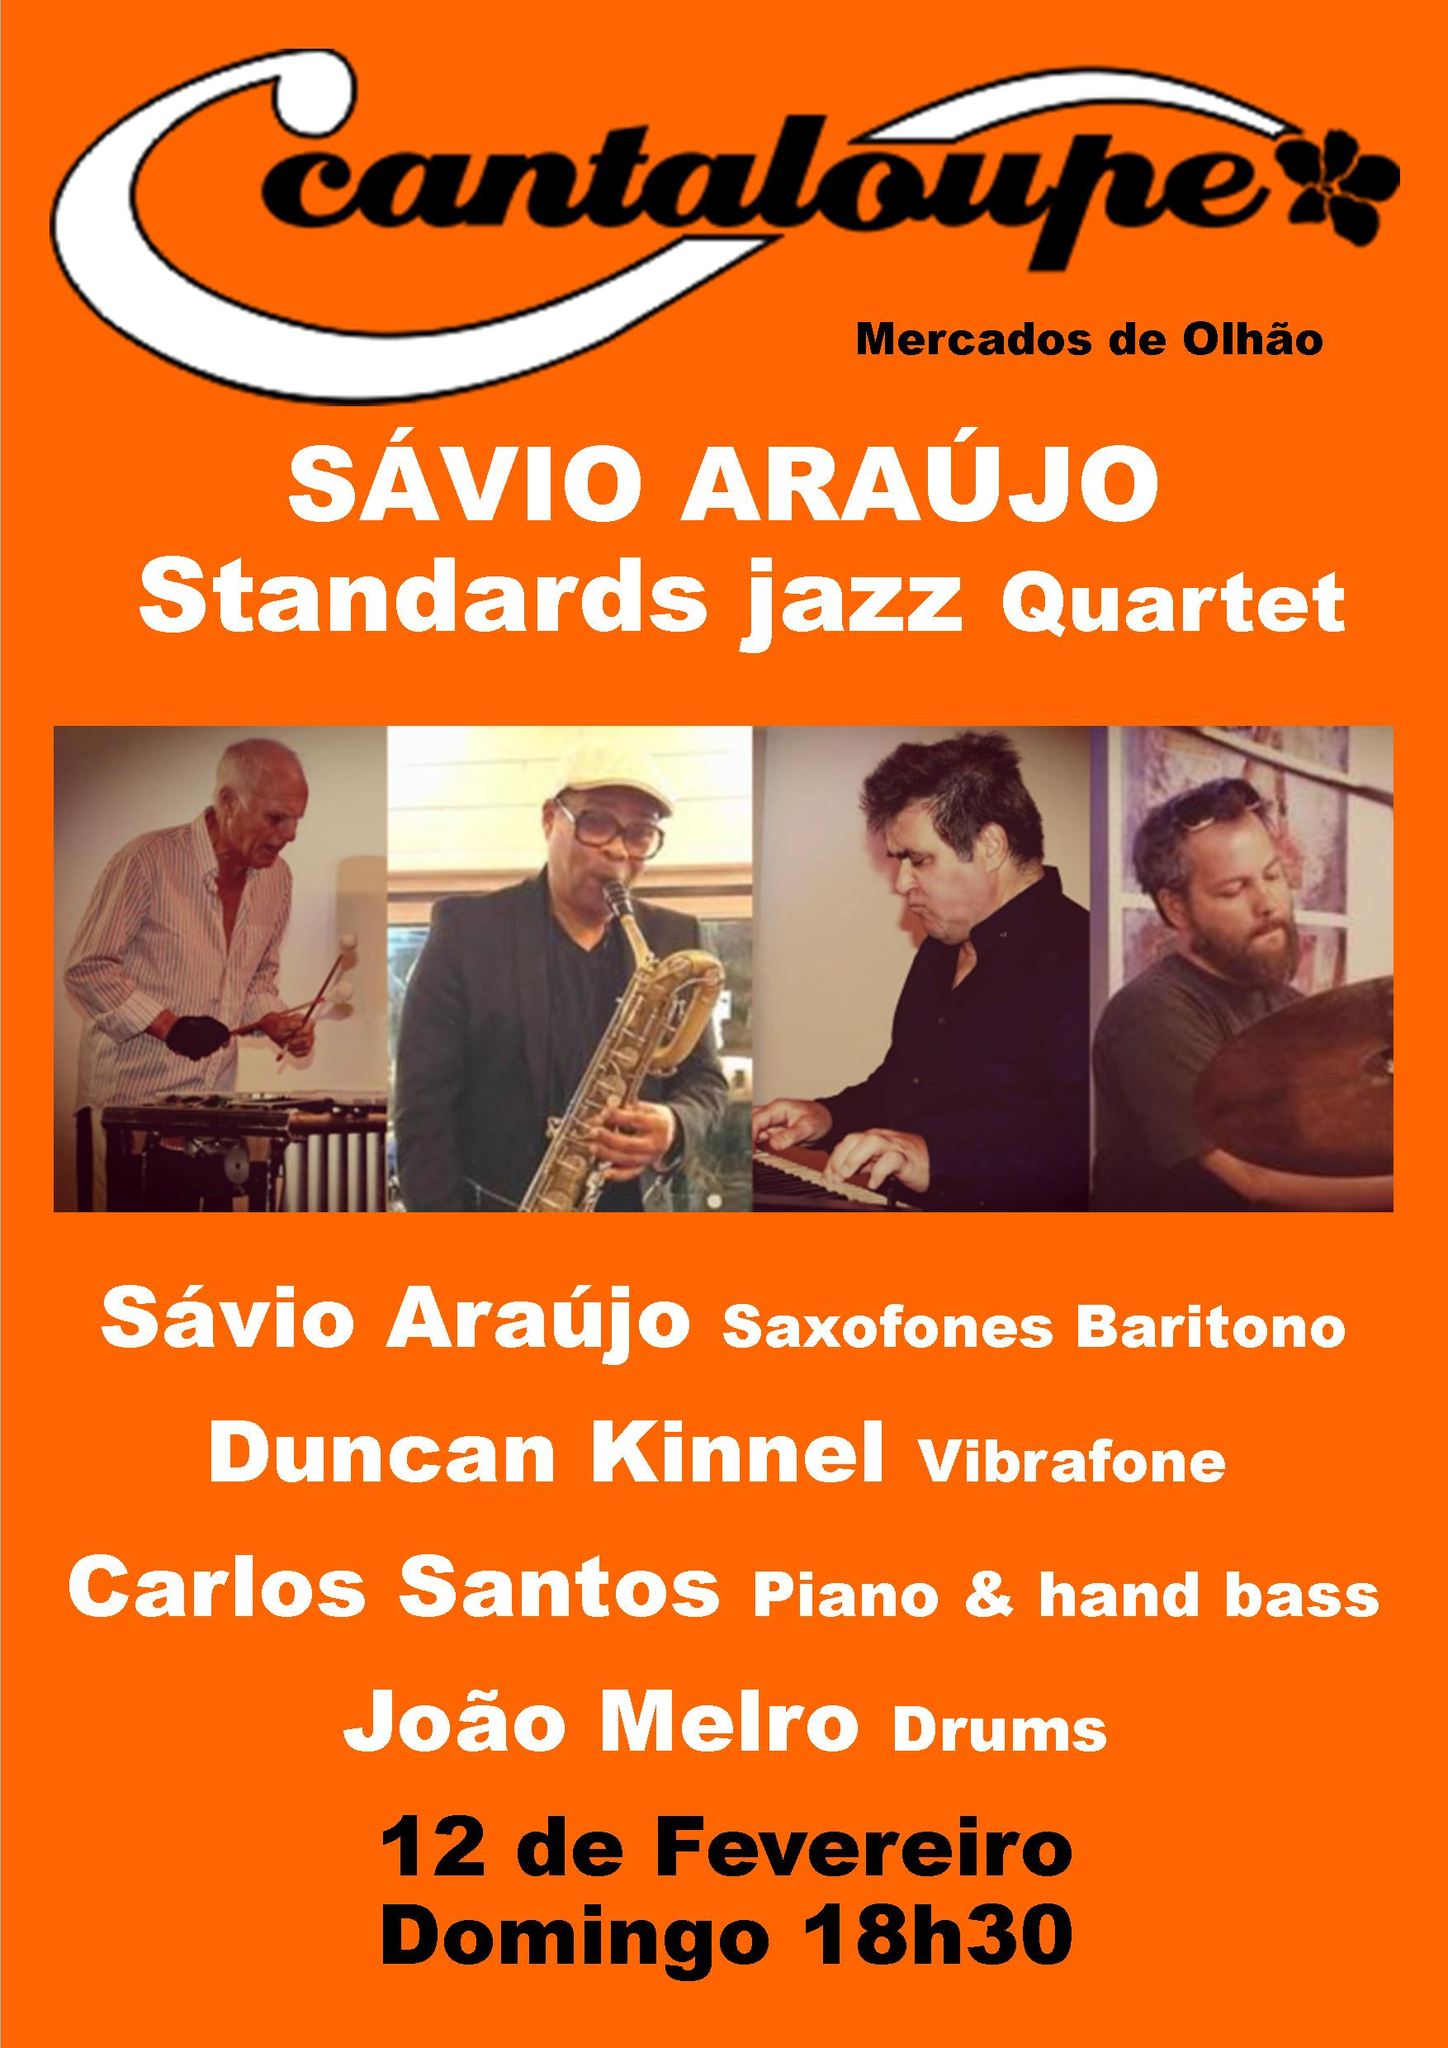 Sávio Araújo quartet